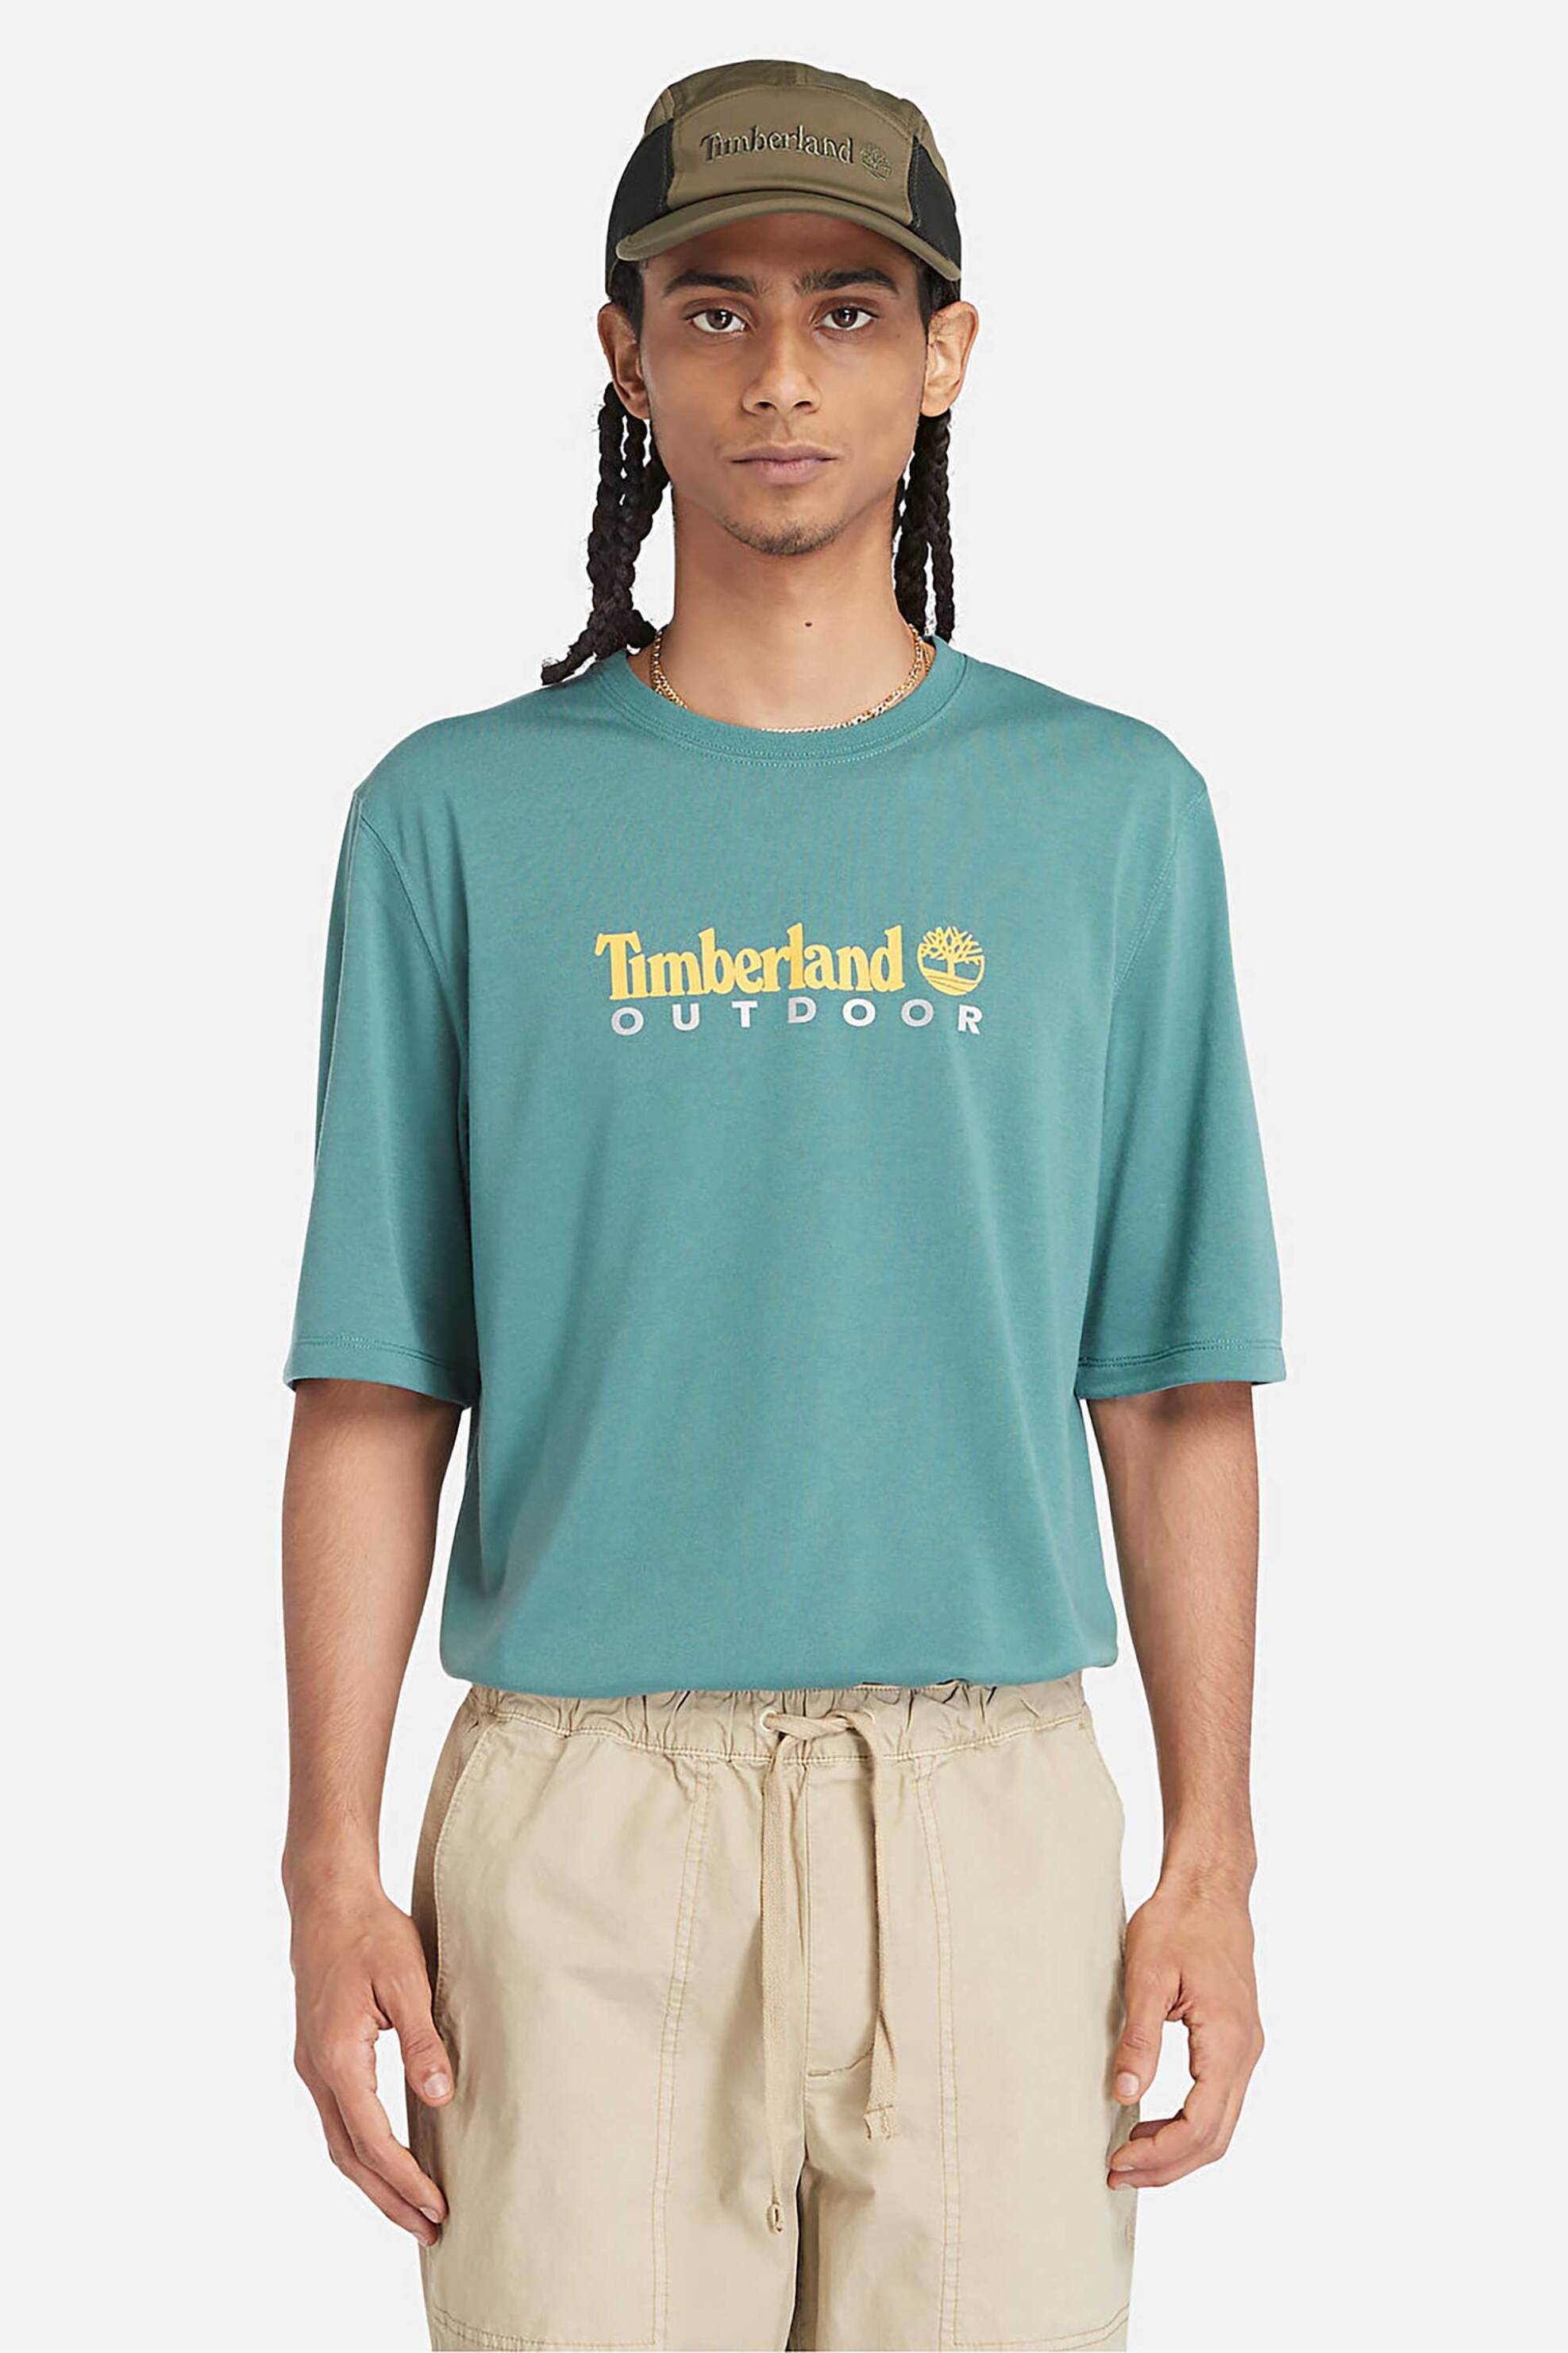 Ανδρική Μόδα > Ανδρικά Ρούχα > Ανδρικές Μπλούζες > Ανδρικά T-Shirts Timberland ανδρικό T-shirt με logo print Regular Fit "UV Protection" - TB0A5SFXCL61 Πράσινο